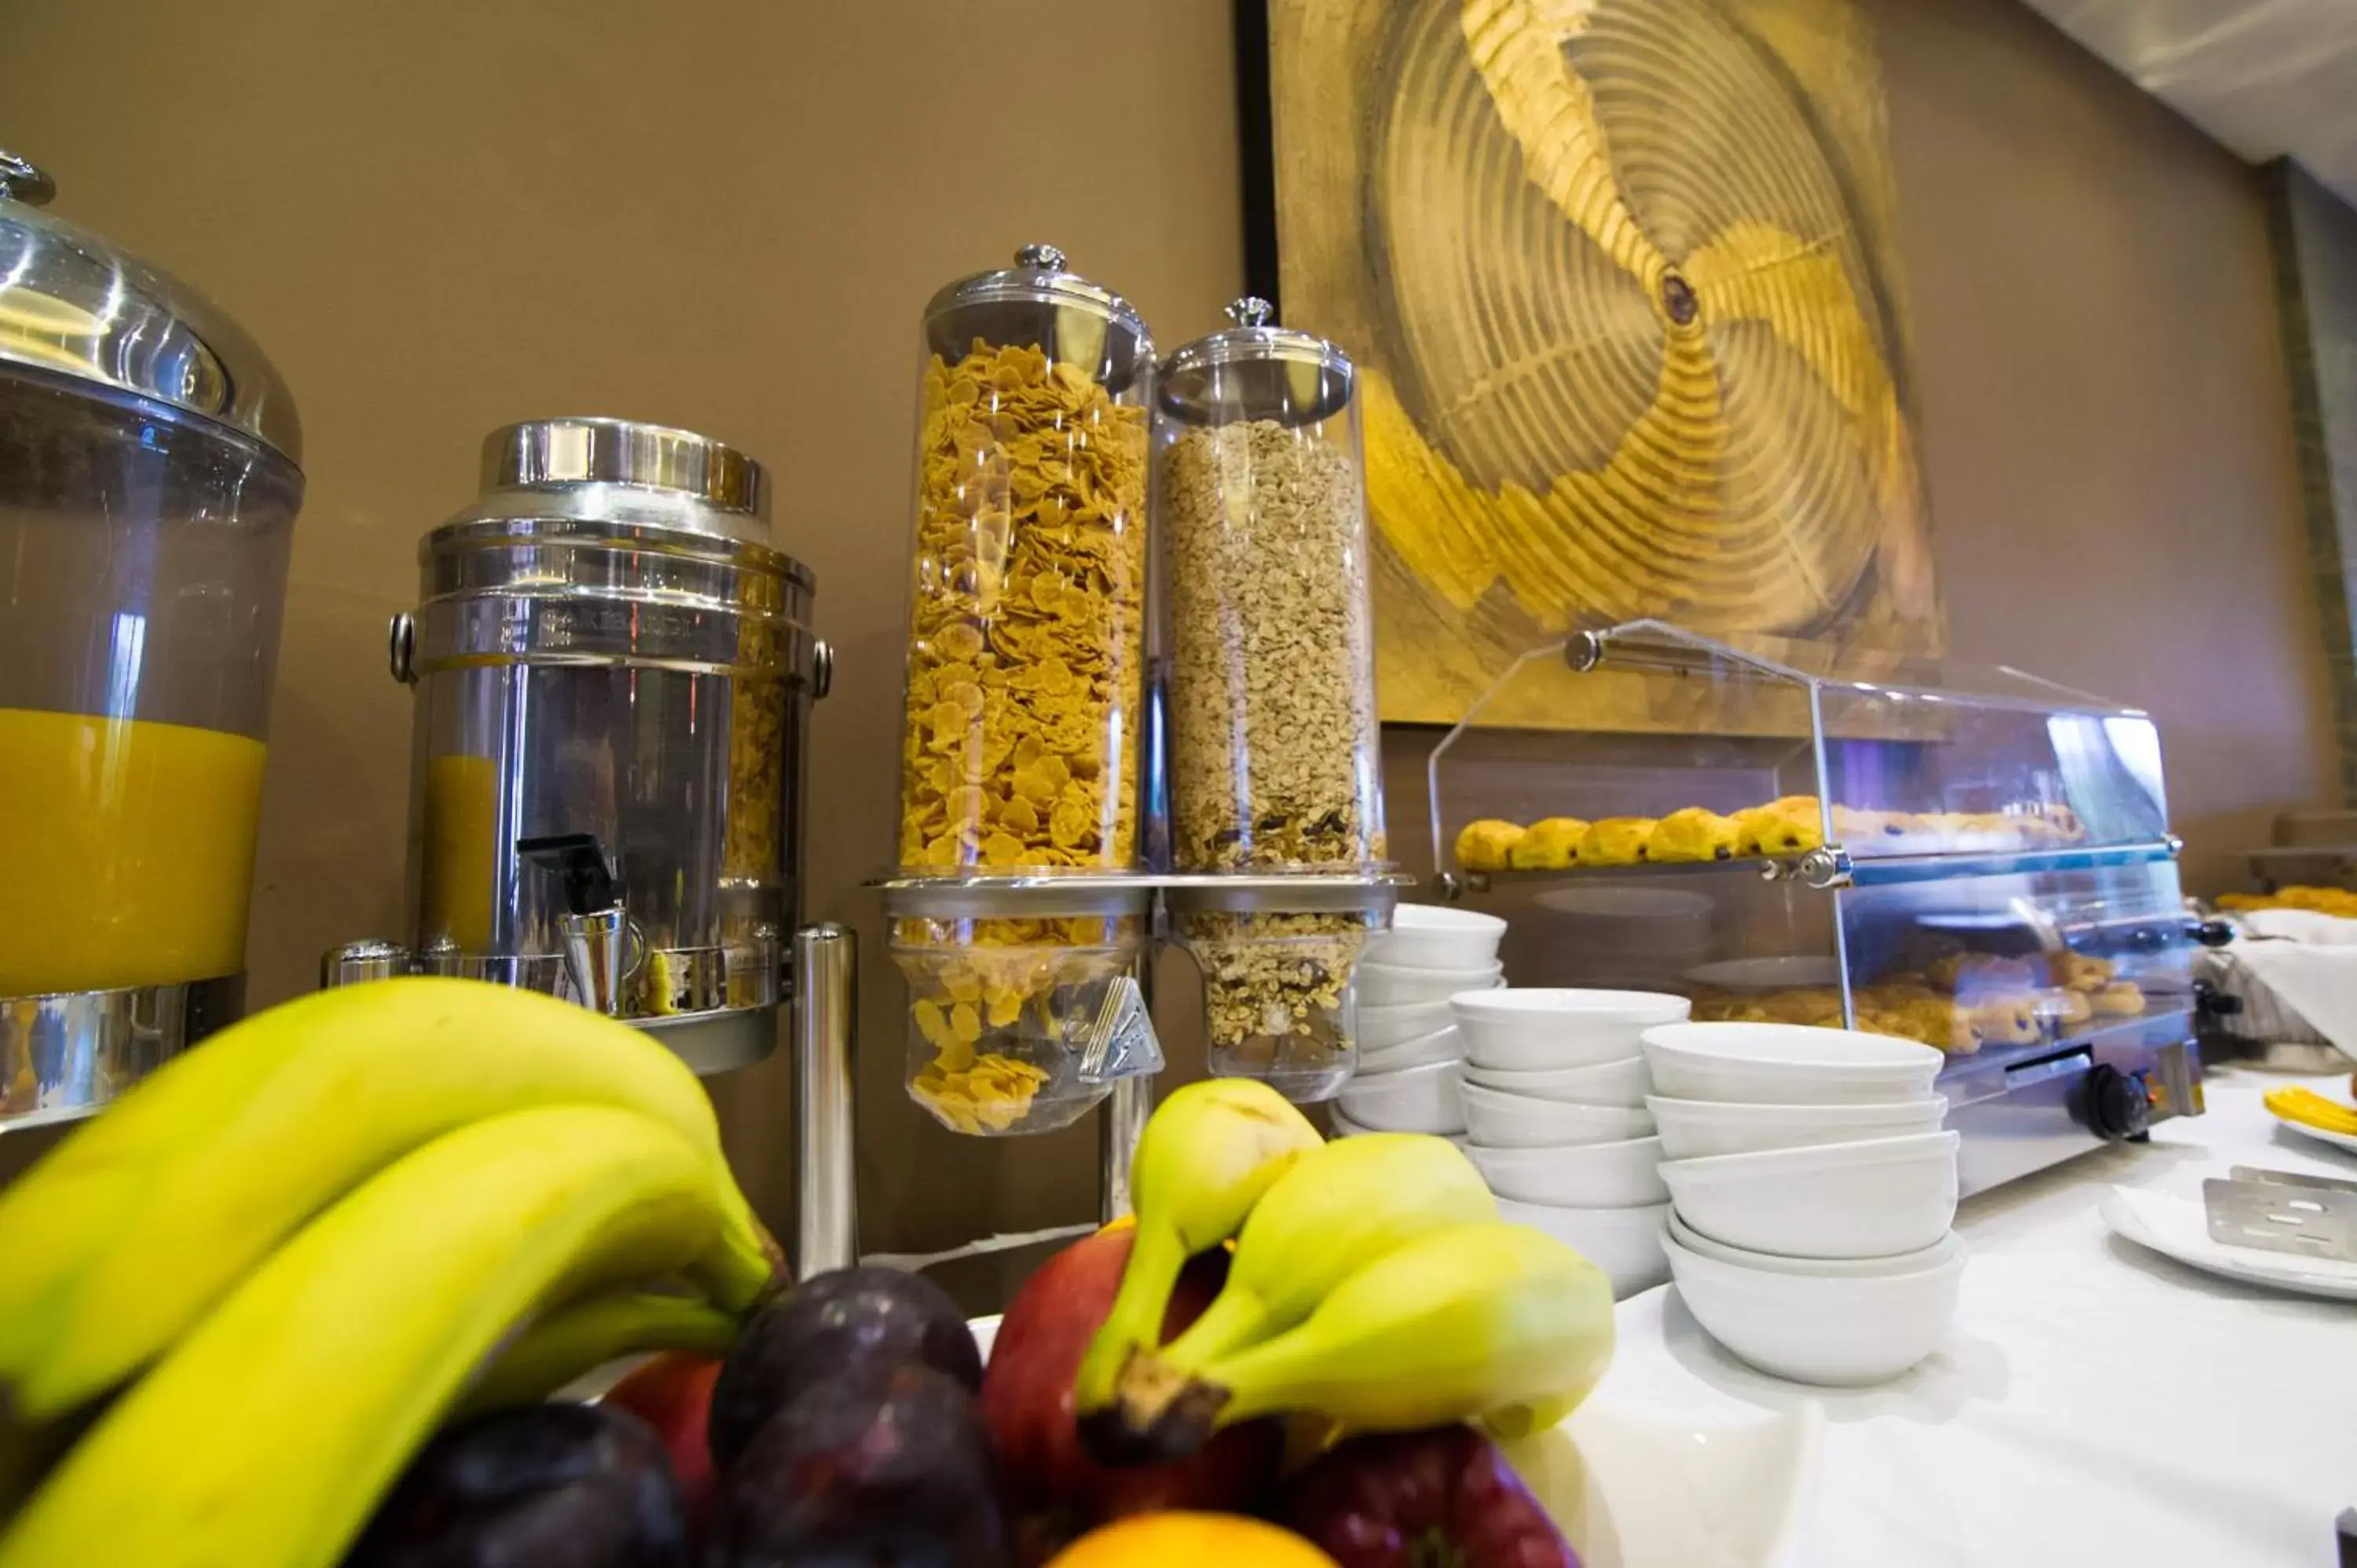 Buffet breakfast in Flisvos Hotel Nafpaktos